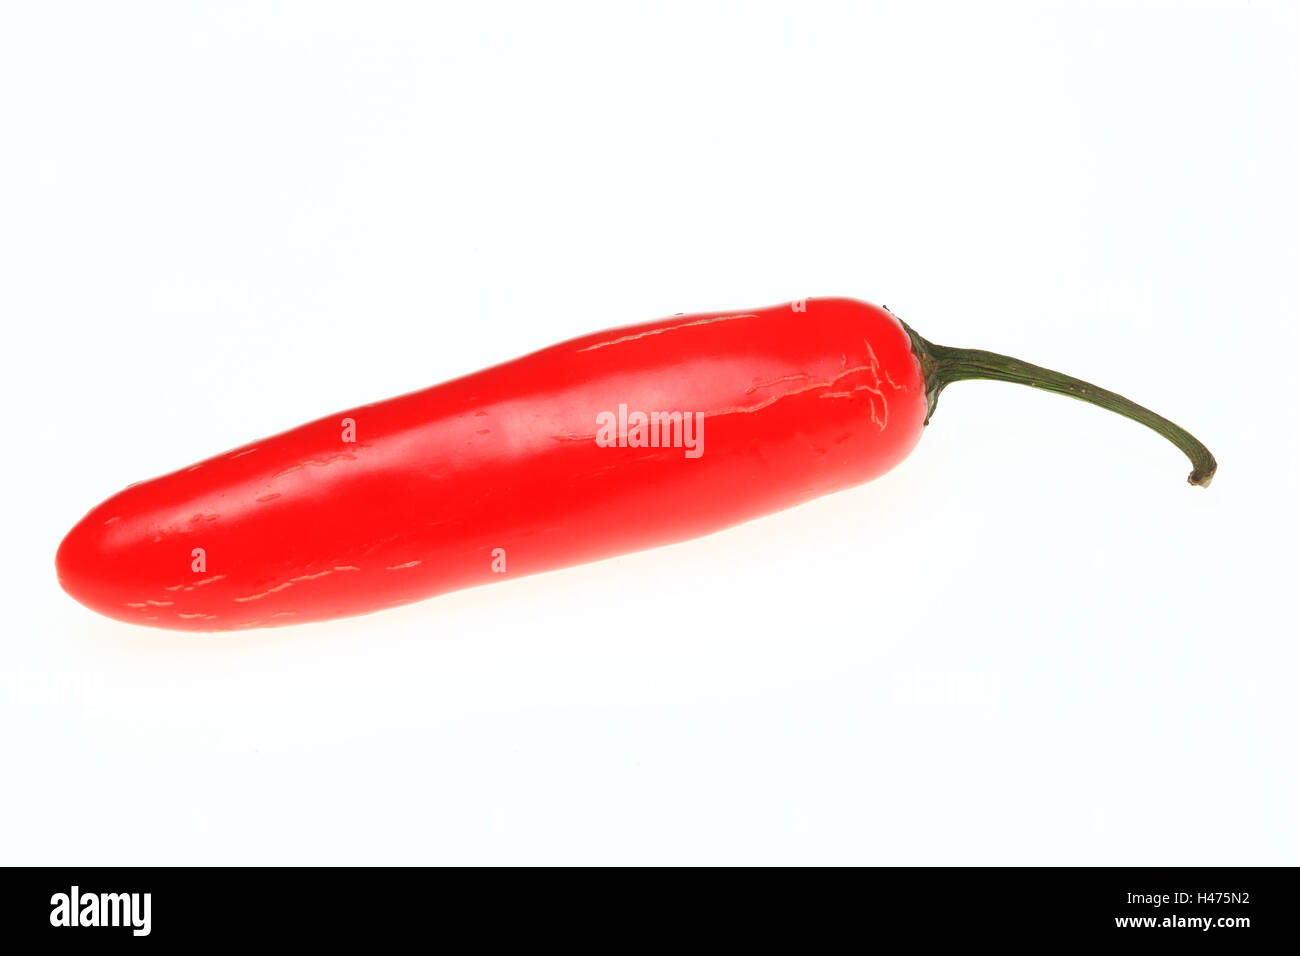 red Jalapeno, chili pepper, Capsicum annuum Stock Photo